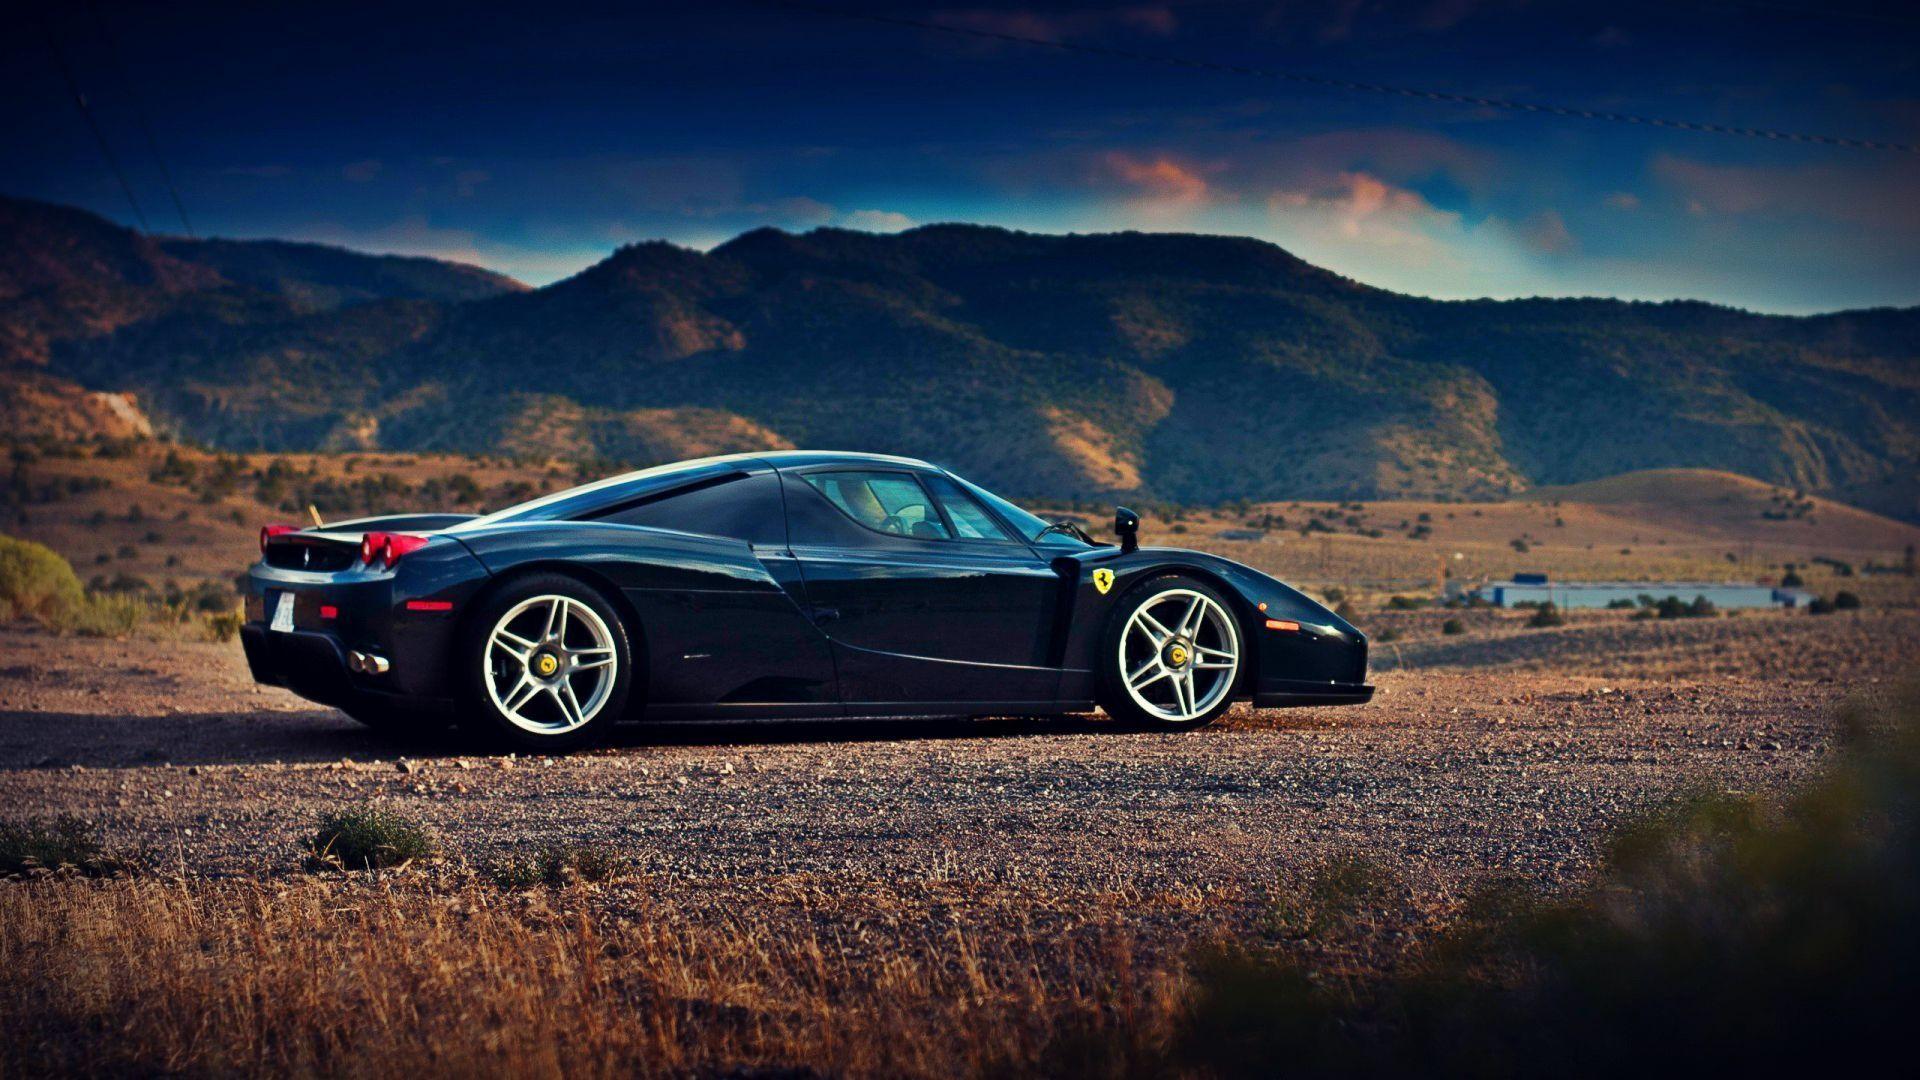 Picture 2015 Ferrari Enzo Black Wallpaper, Image